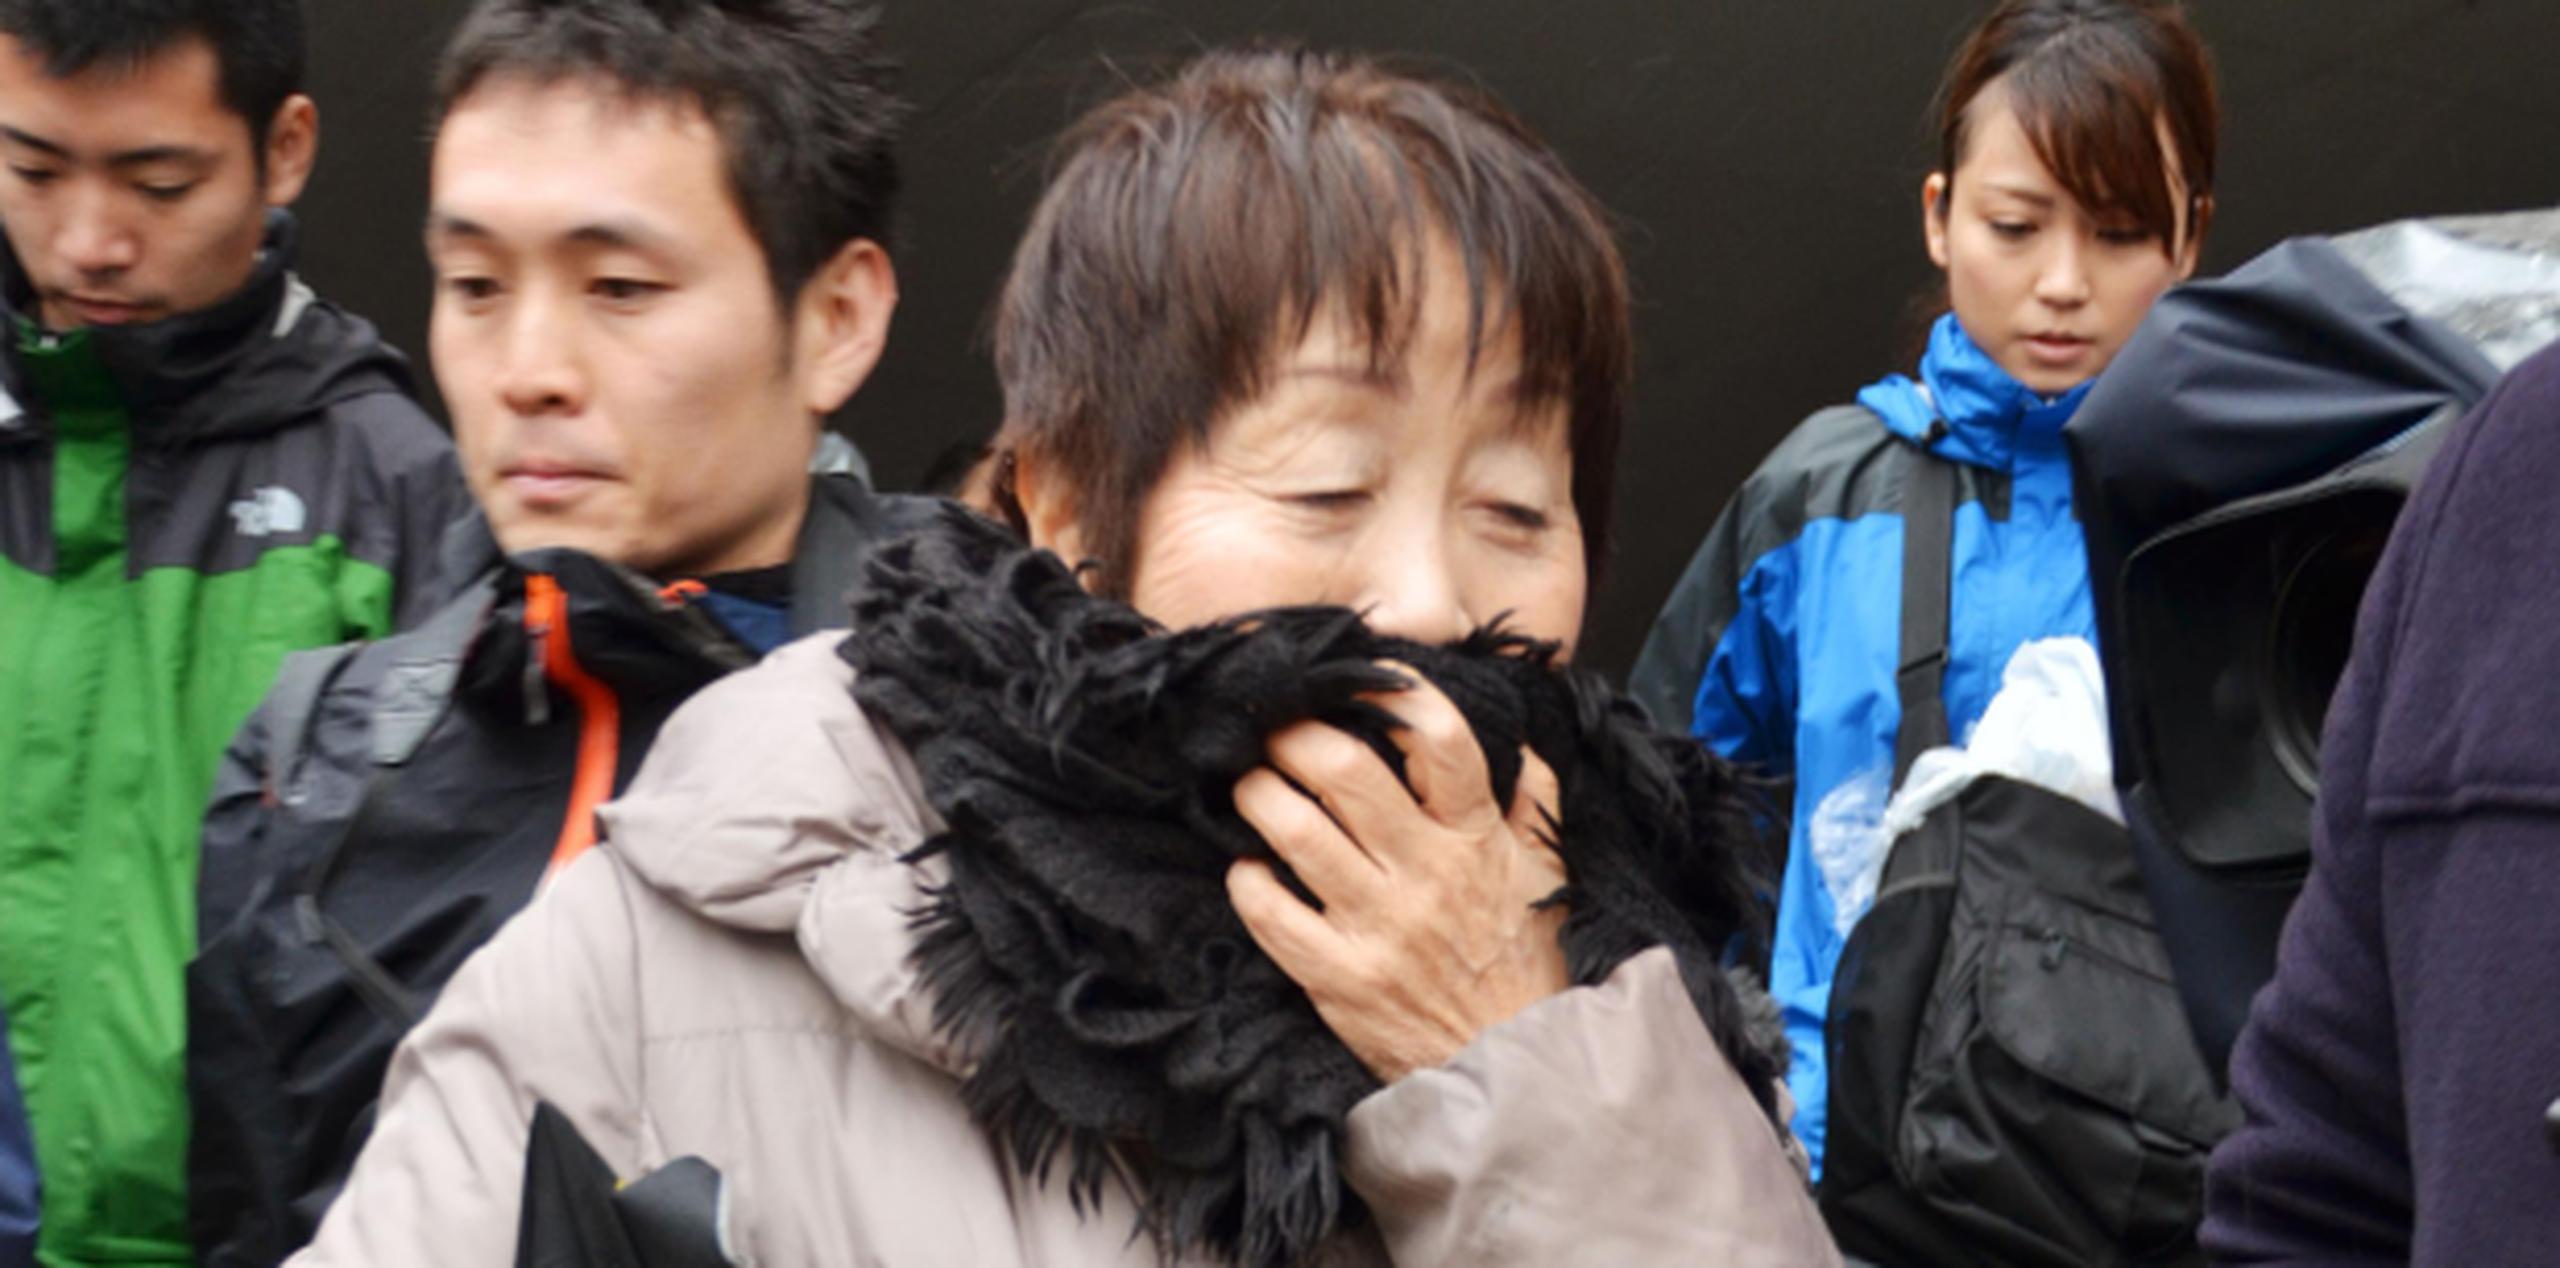 La corte rechazó el argumento de sus abogados de que Chisako Kakehi padecía demencia. (Kyodo News vía AP / Archivo)